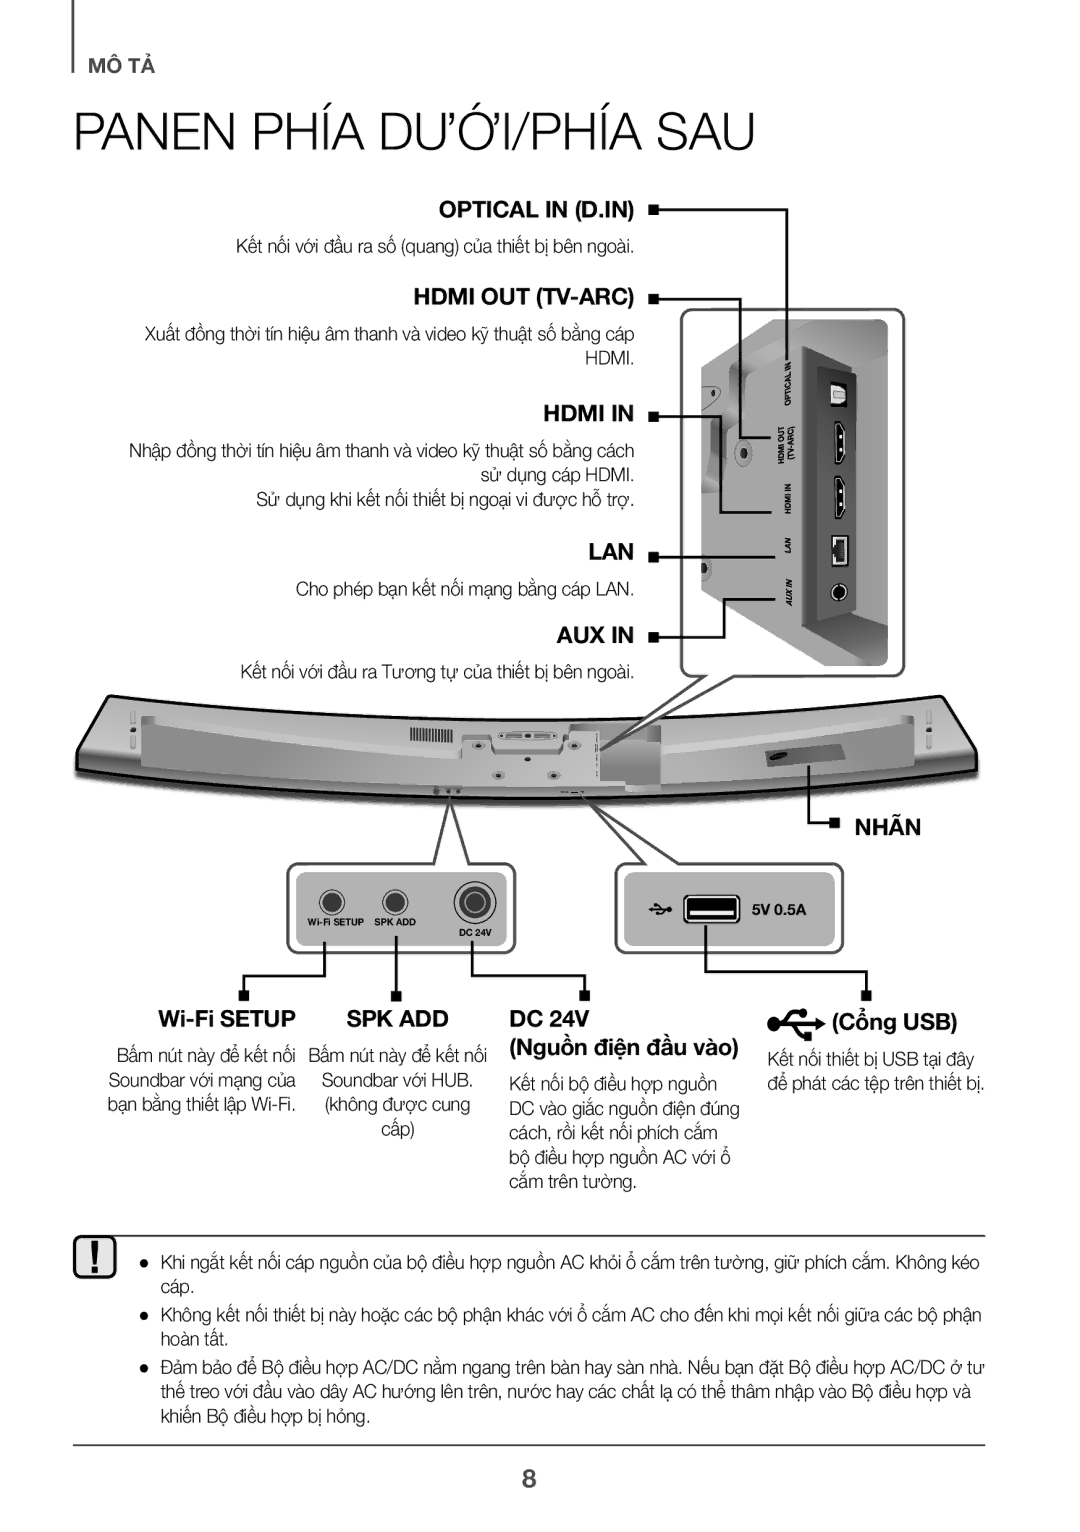 Samsung HW-J7501/XV manual Panen PHÍA DƯỚI/PHÍA SAU, Hub, Cung, Câp 